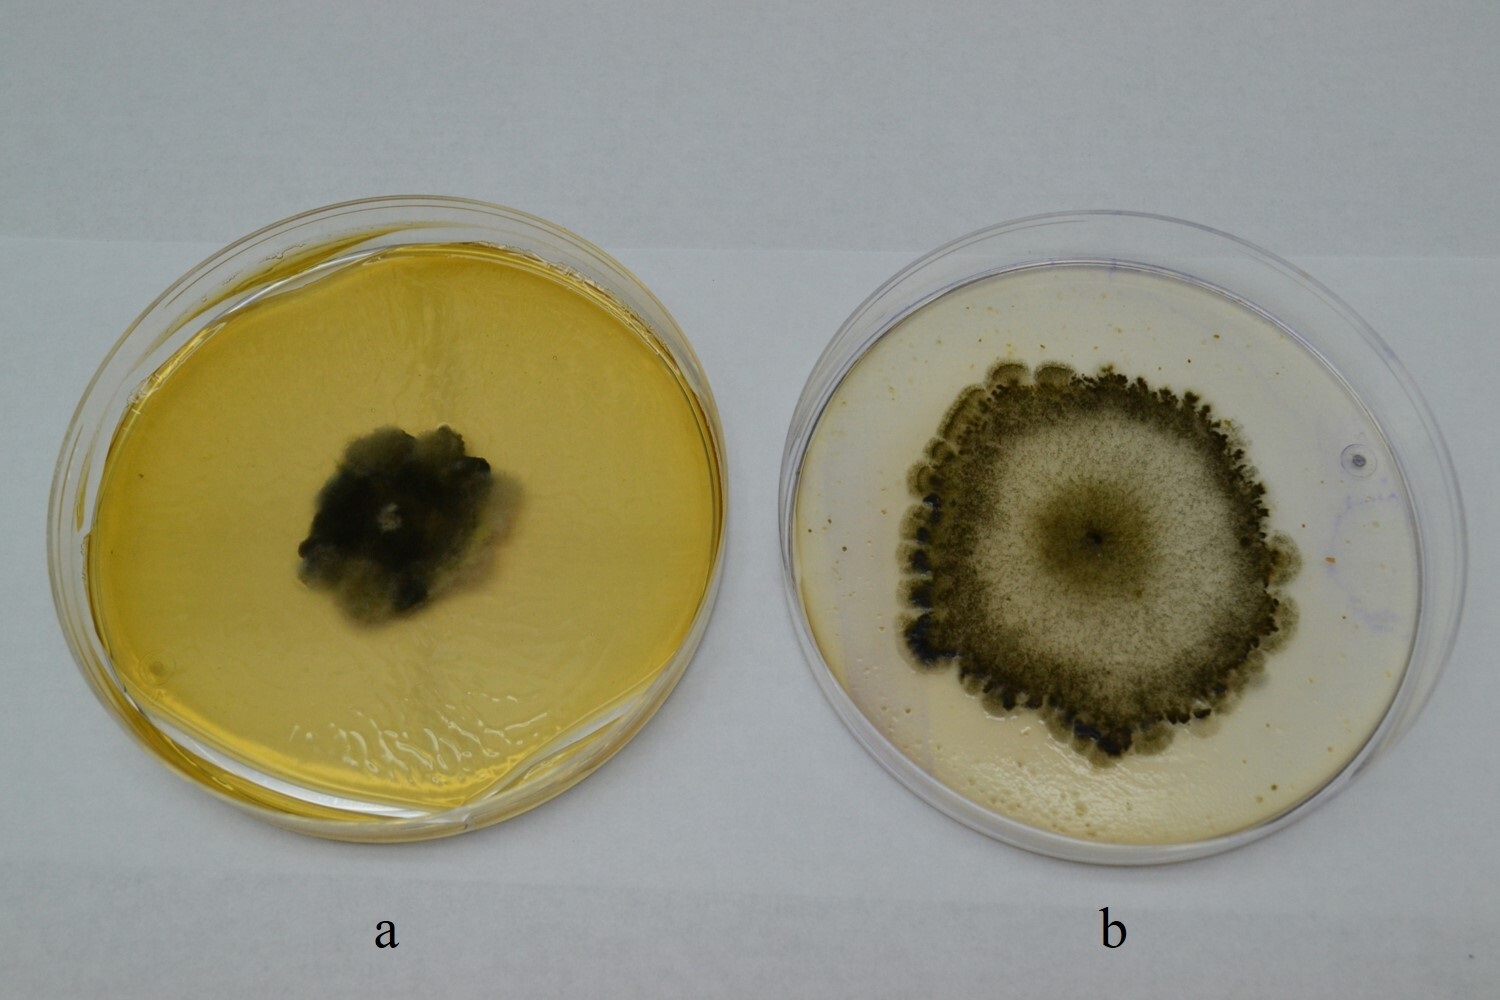 Colonias de 14 días de edad en APG (a) y
AHM (b) / 14-day-old colonies in potato dextrose agar (PDA) (a) and corn meal agar (CMA) (b).